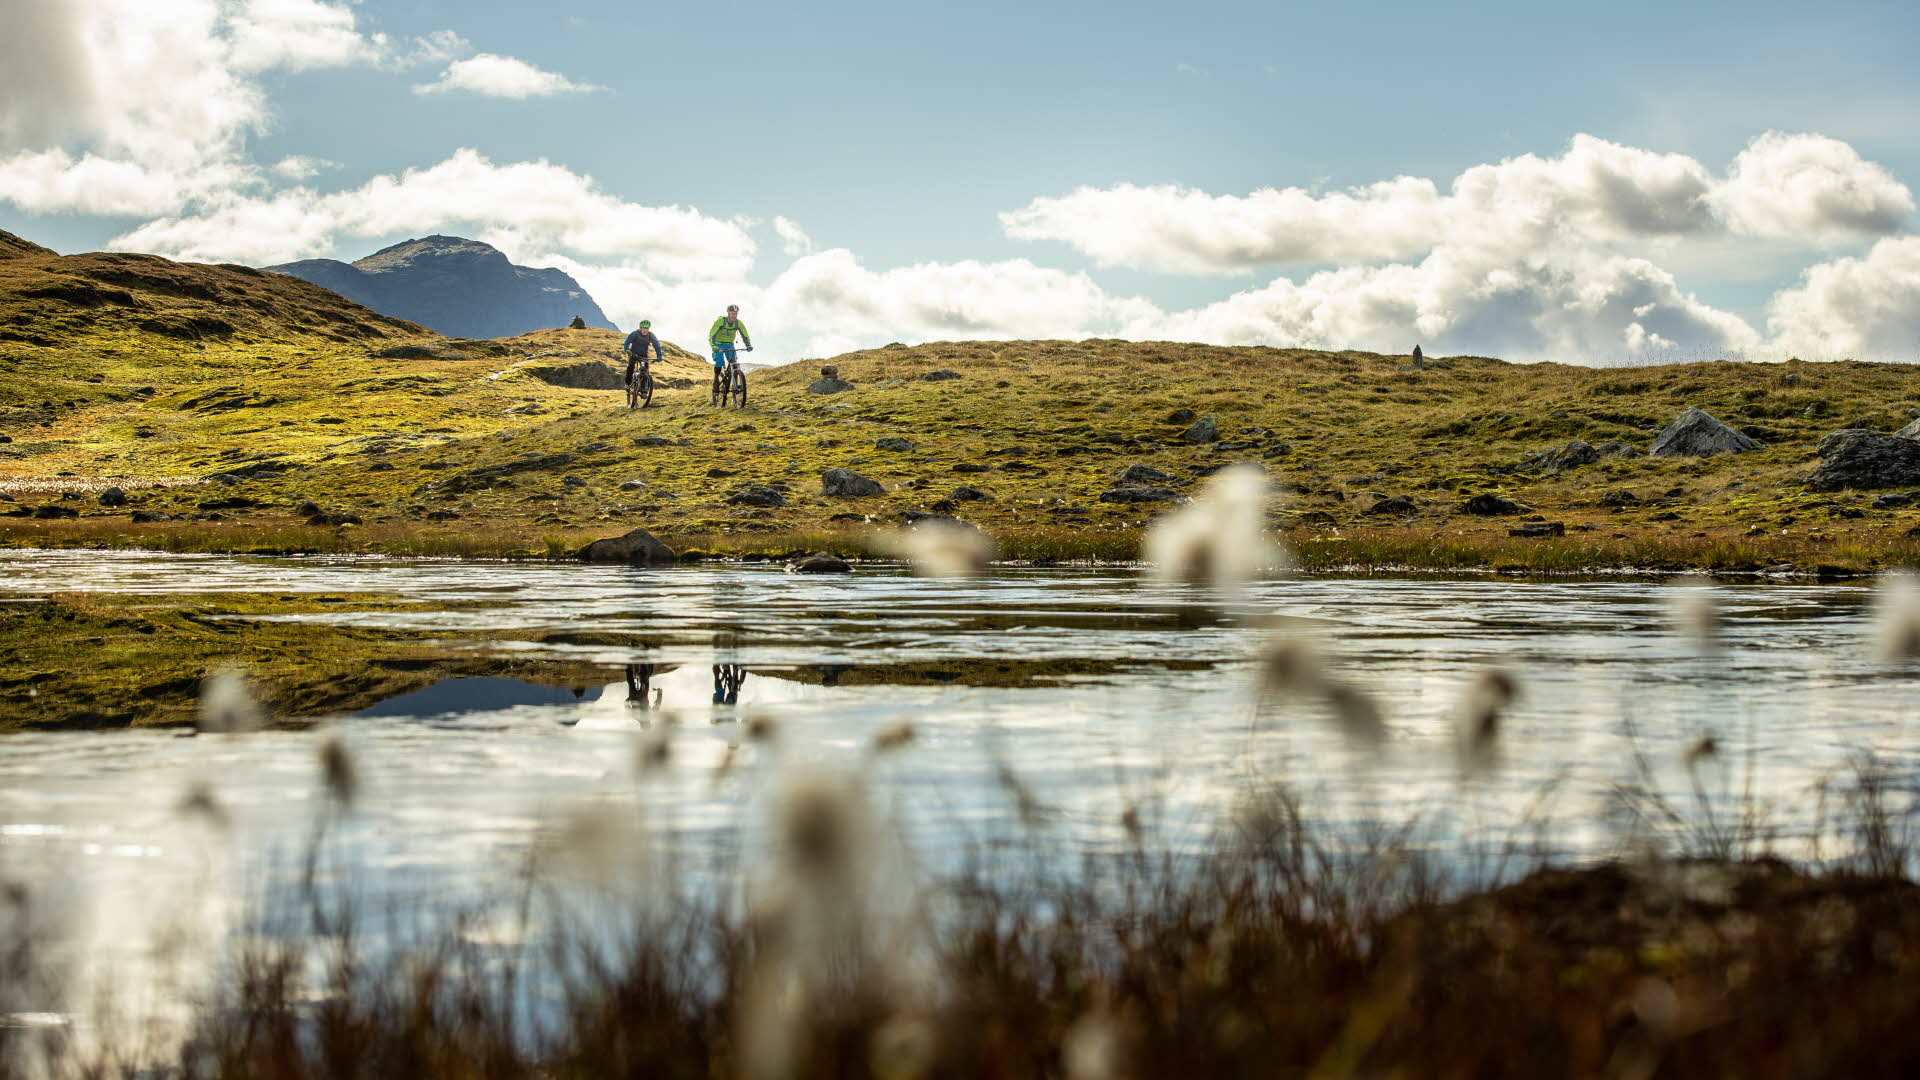 晴朗的夏日，两个骑行者在山间的一个池塘边。 